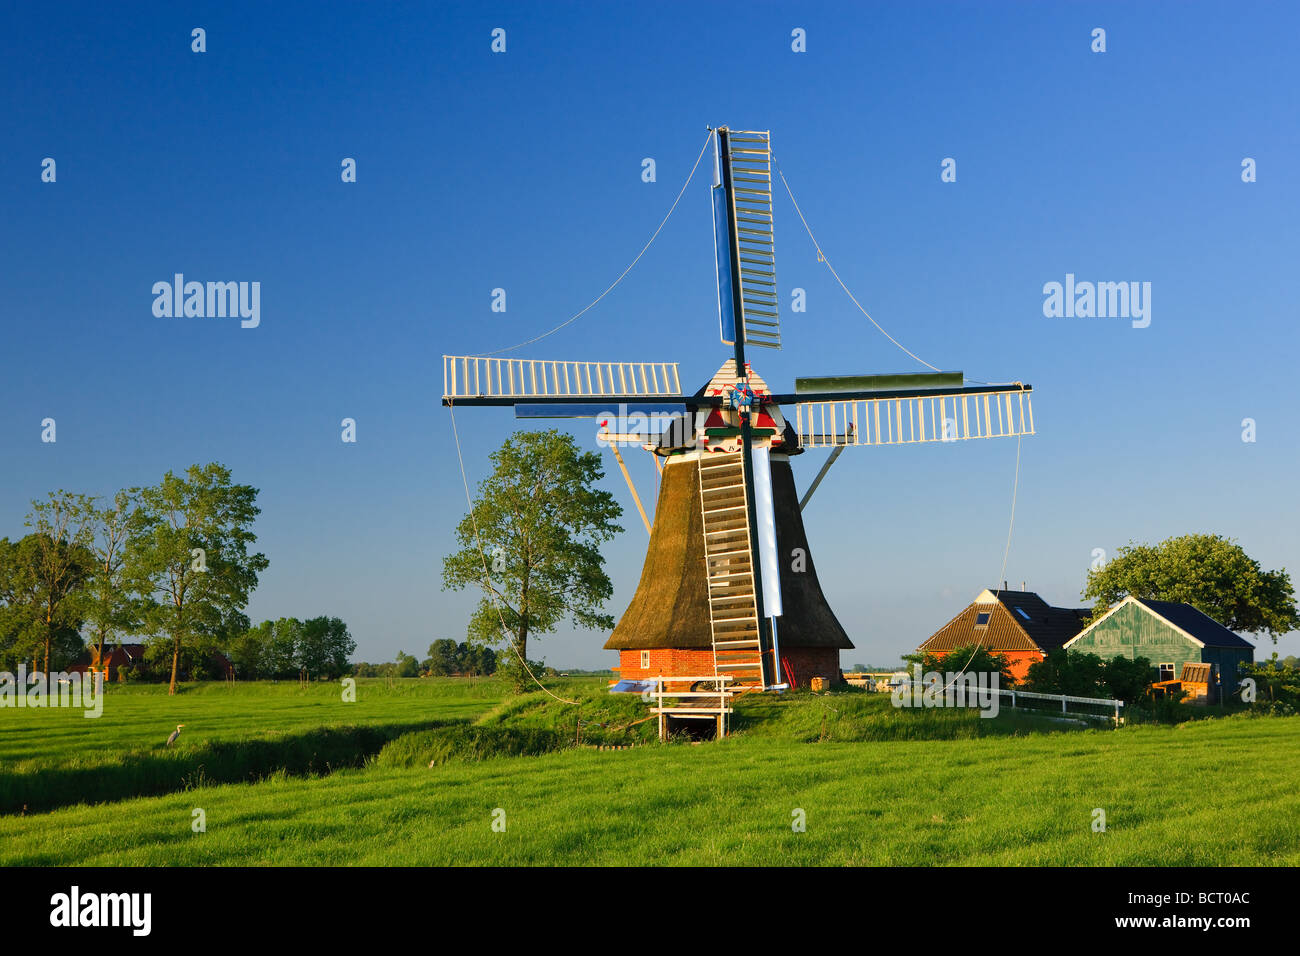 El molino de viento Eolo, Aduard ,Groningen, Países Bajos Foto de stock